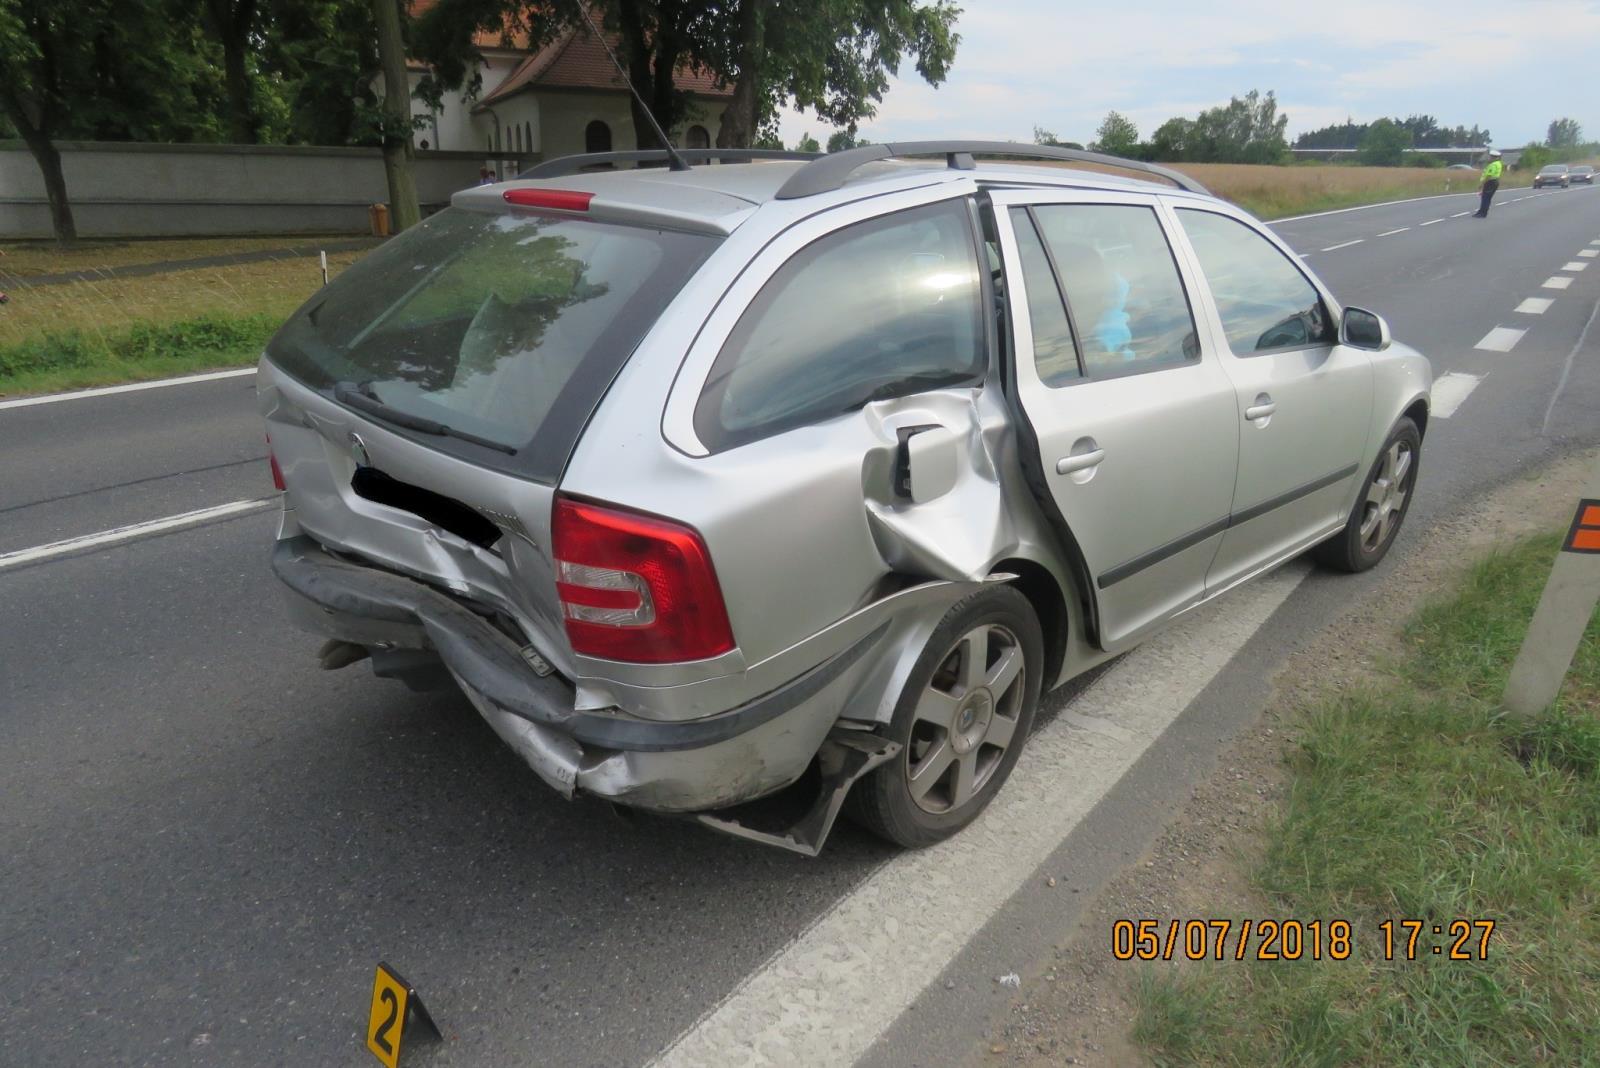 Dopravní nehoda - Holýšov - 05.07.2018